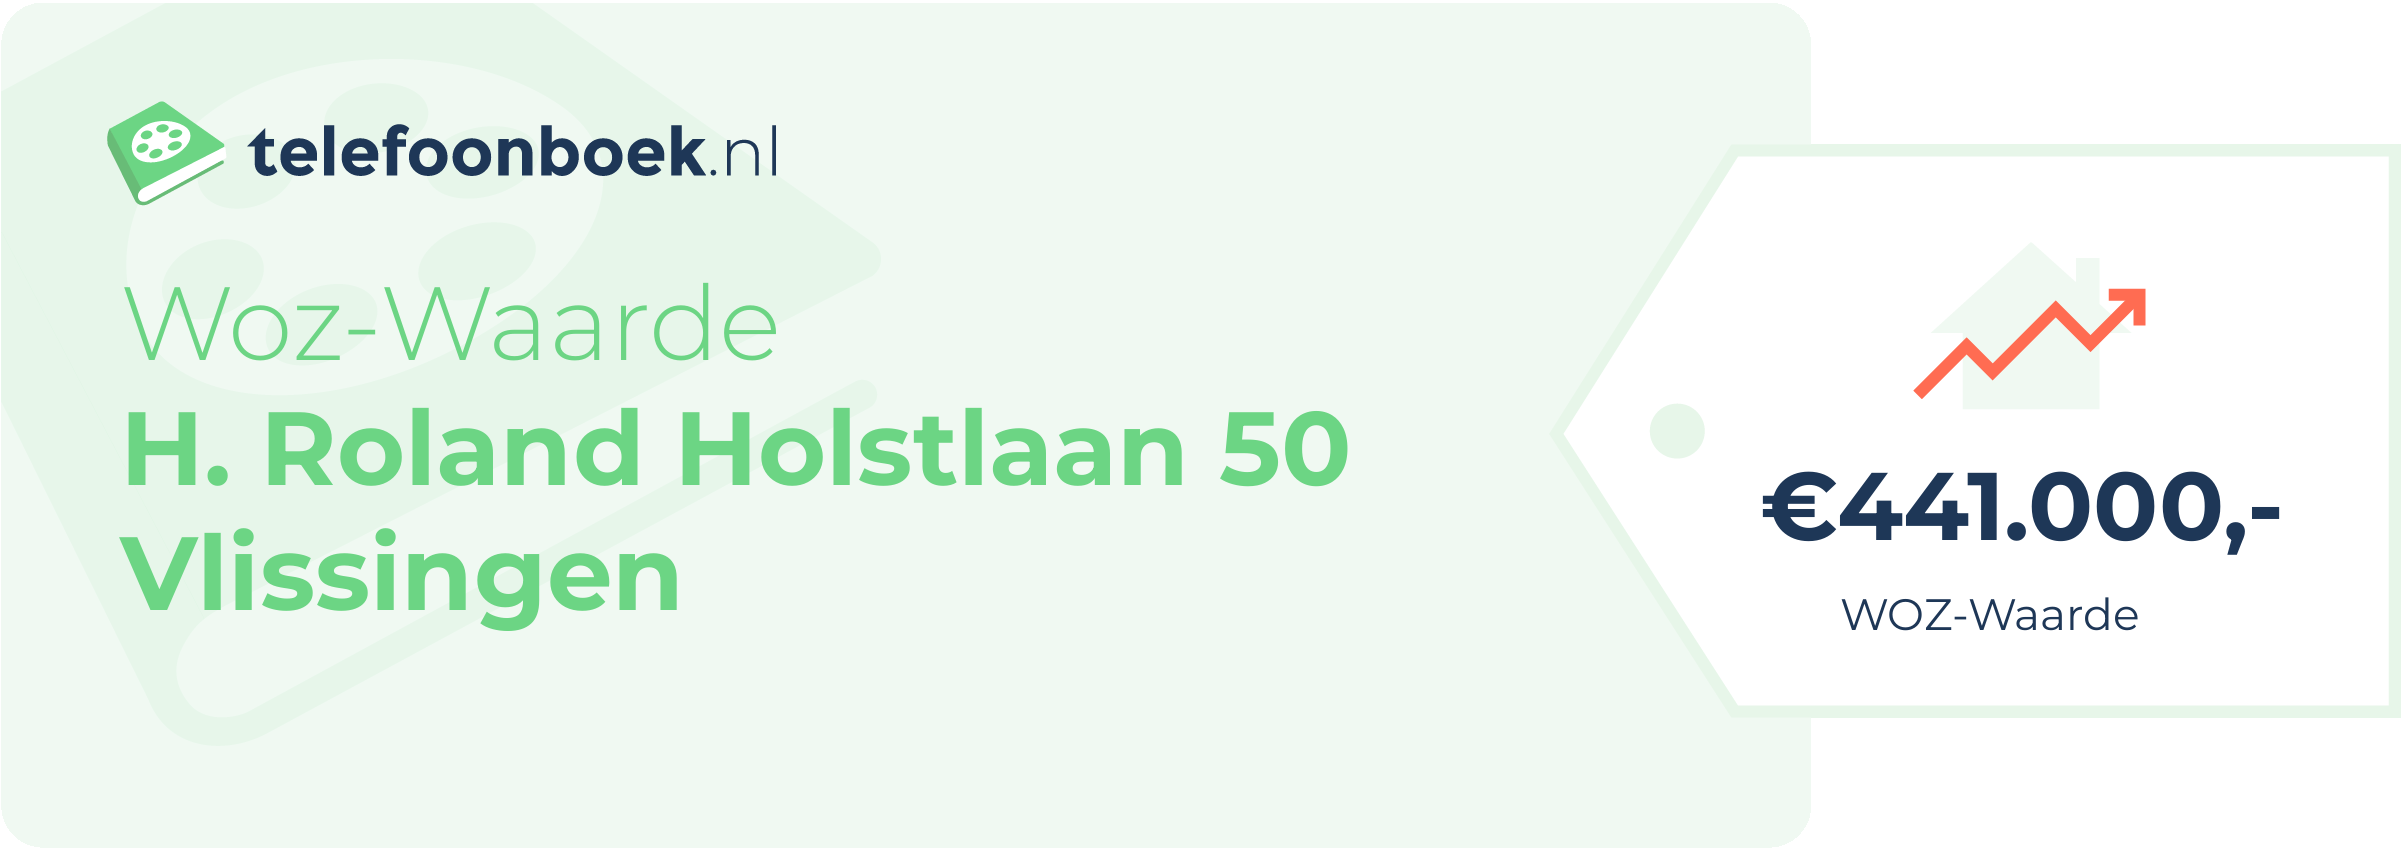 WOZ-waarde H. Roland Holstlaan 50 Vlissingen